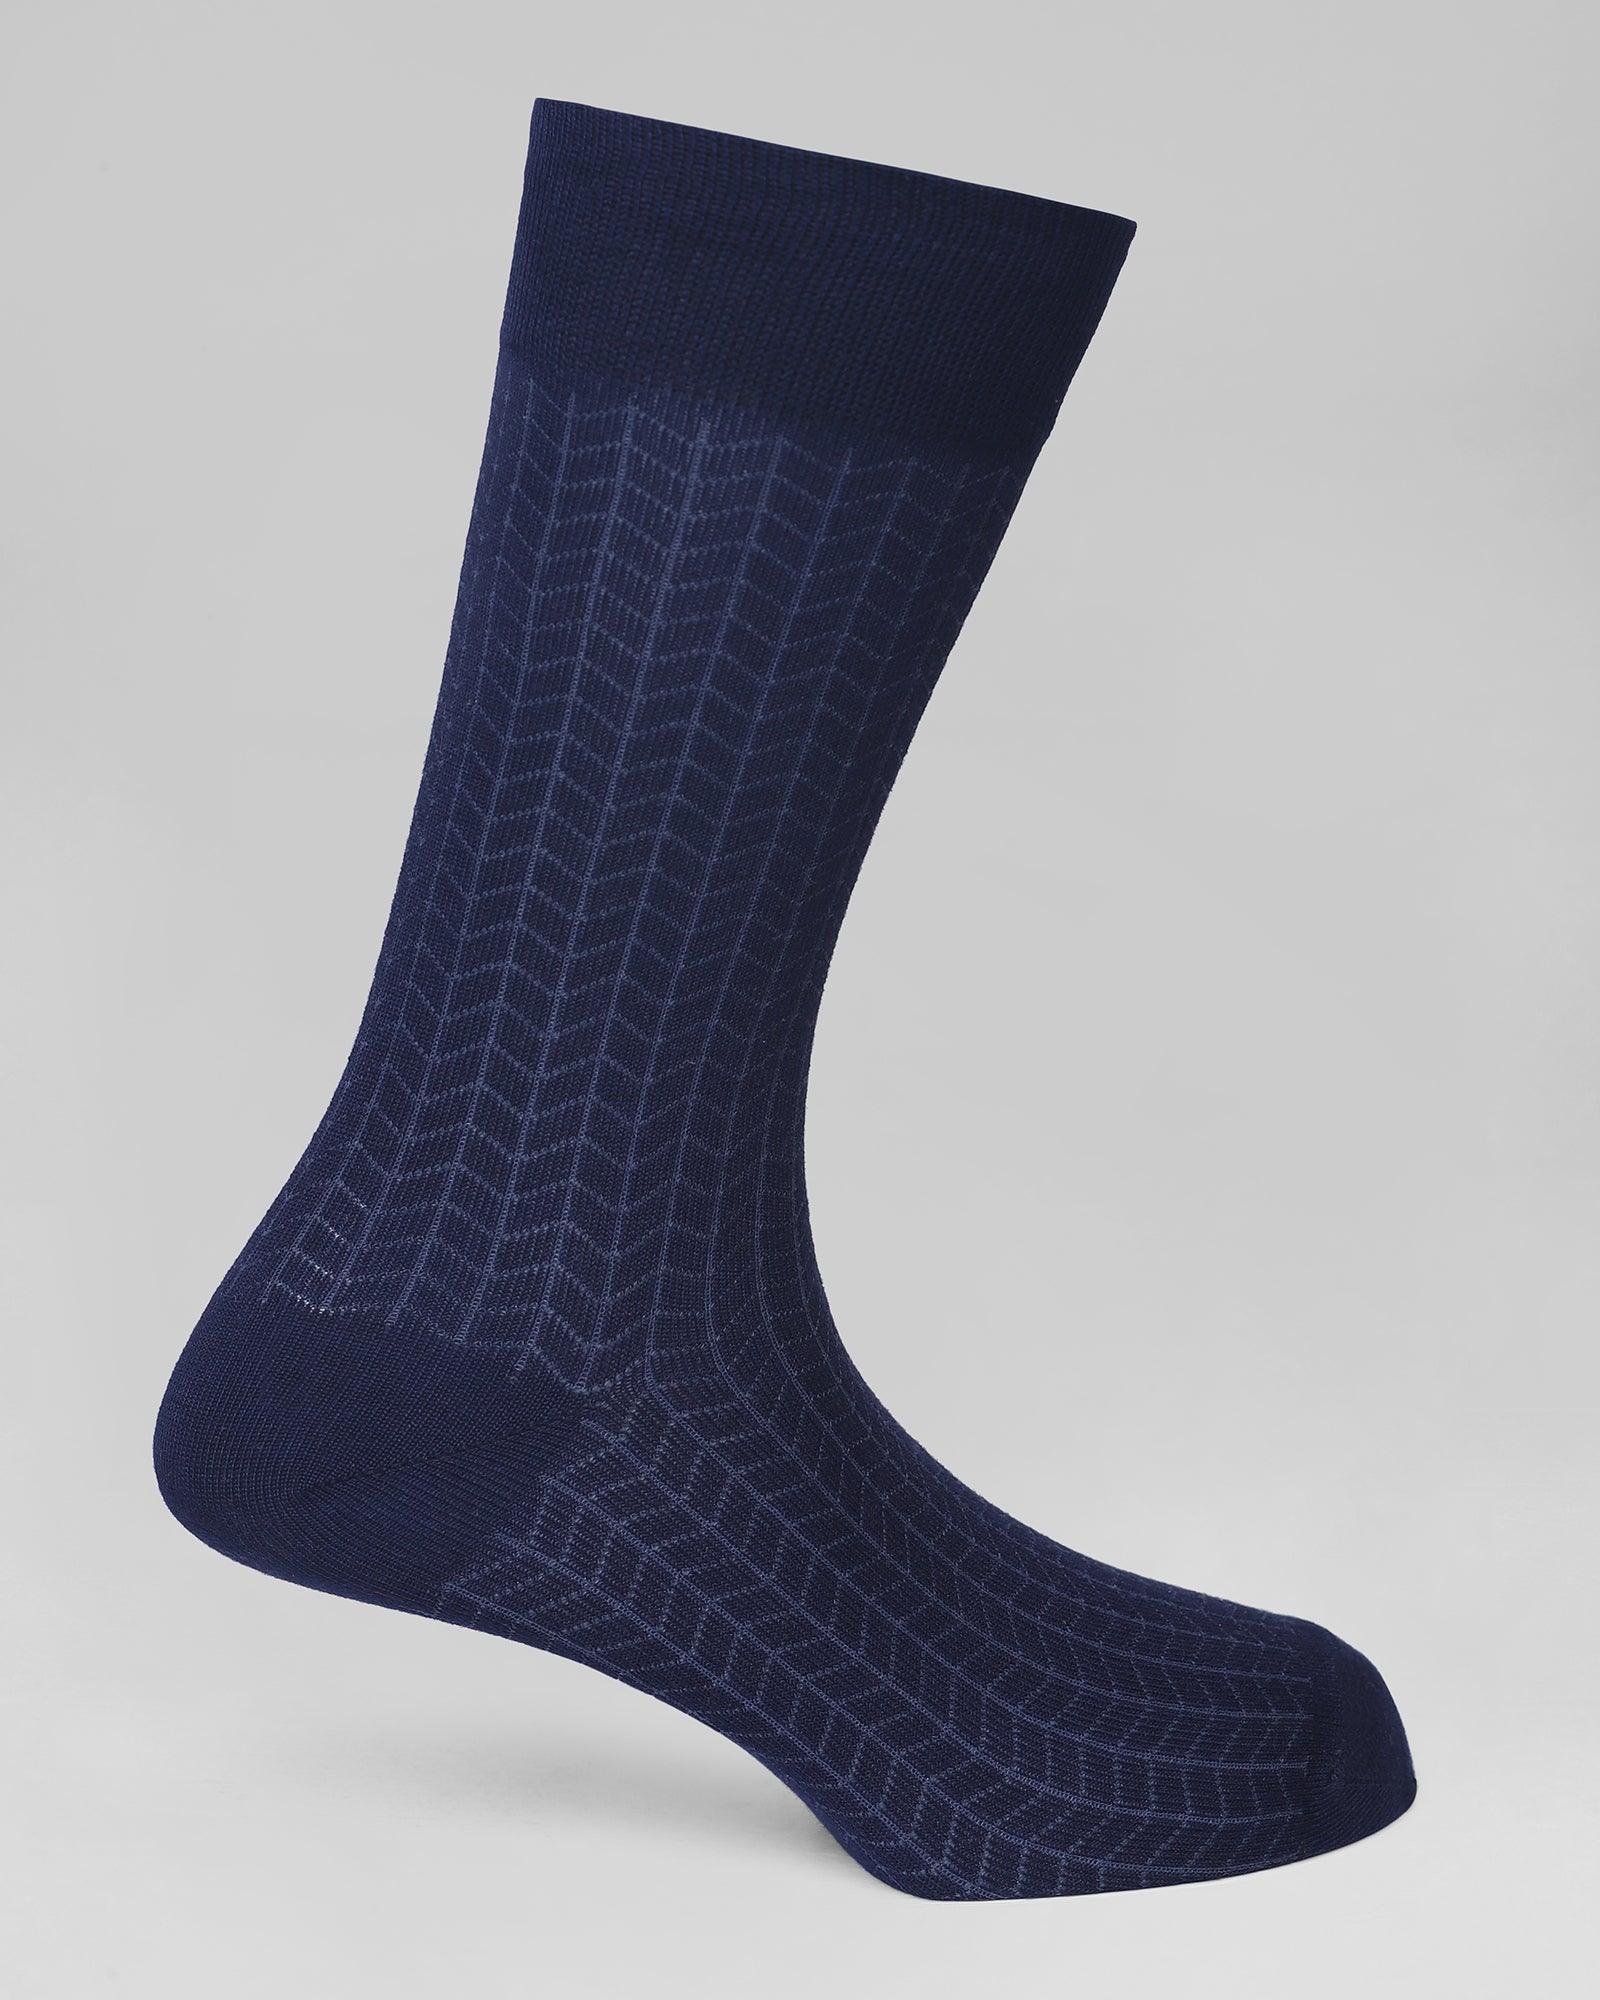 Cotton Dark Navy Textured Socks - Olean